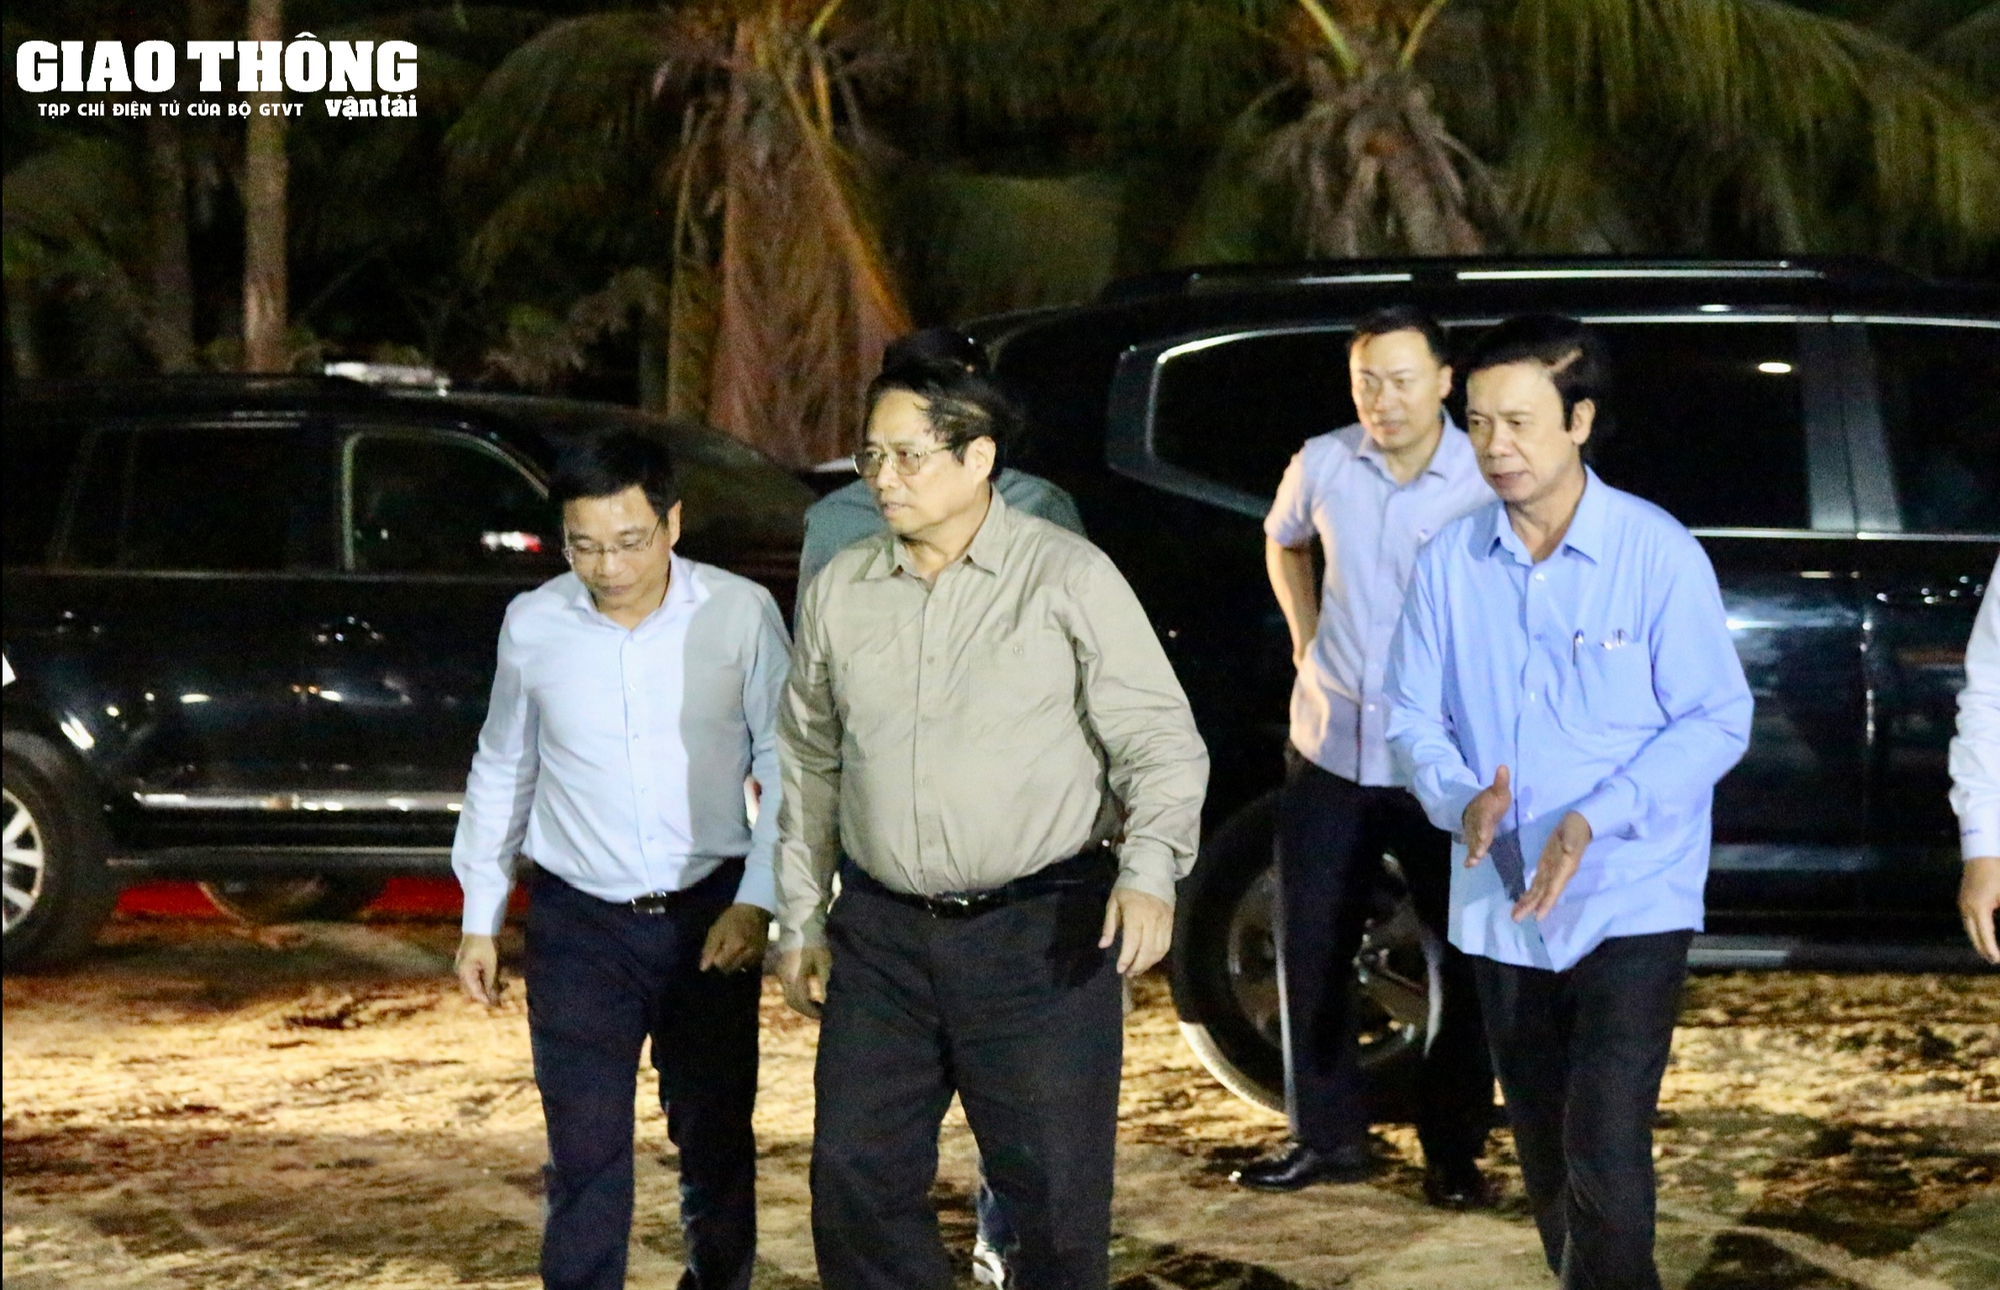 Chùm ảnh Thủ tướng Phạm Minh Chính kiểm tra cầu Rạch Miễu 2 trong đêm- Ảnh 1.